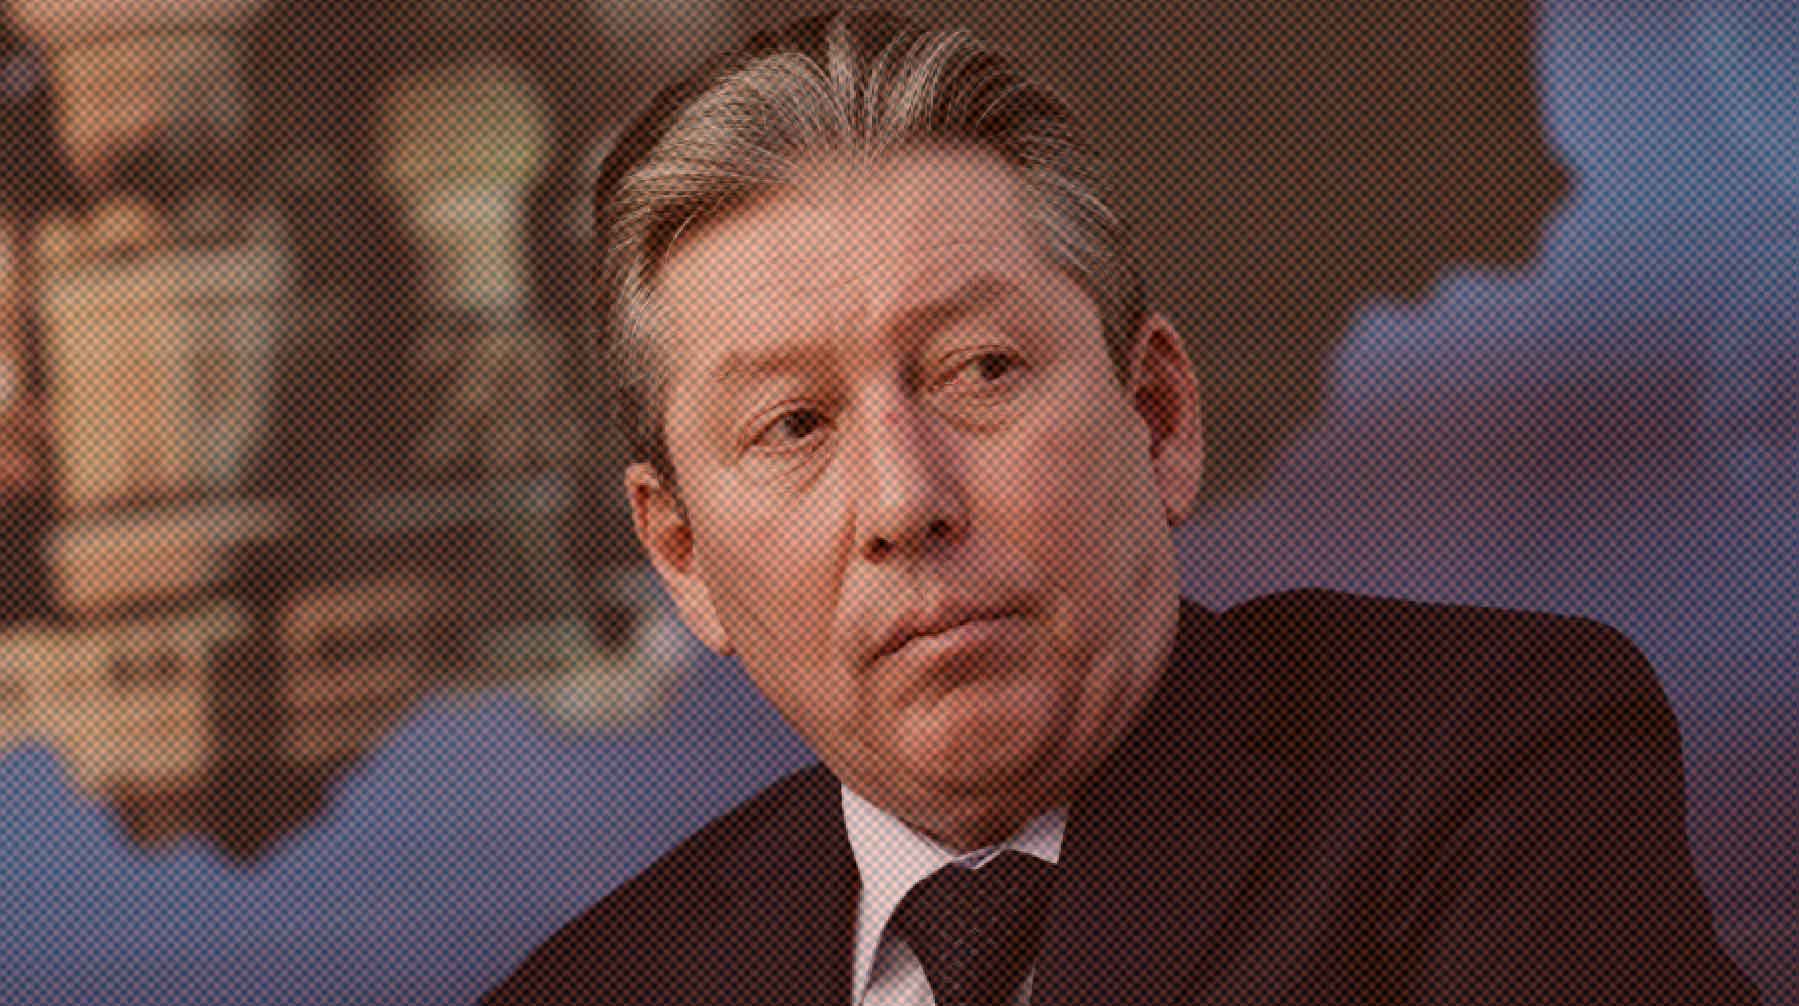 Dailystorm - Председатель совета директоров ЛУКОЙЛа выпал из окна и погиб в Москве